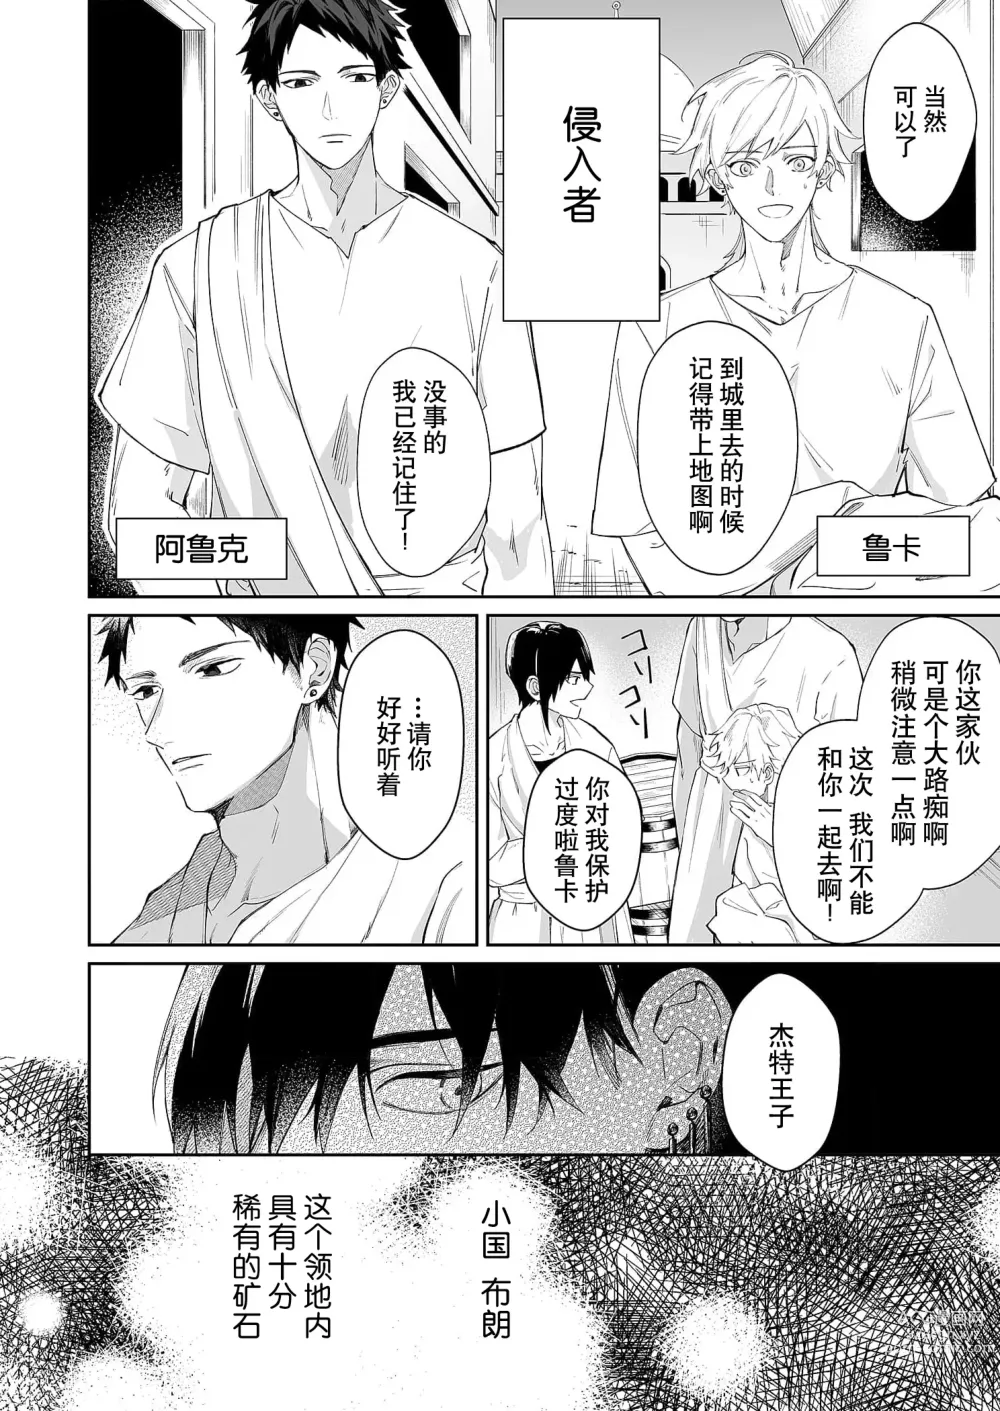 Page 6 of manga 籠獄中的新娘 1-3